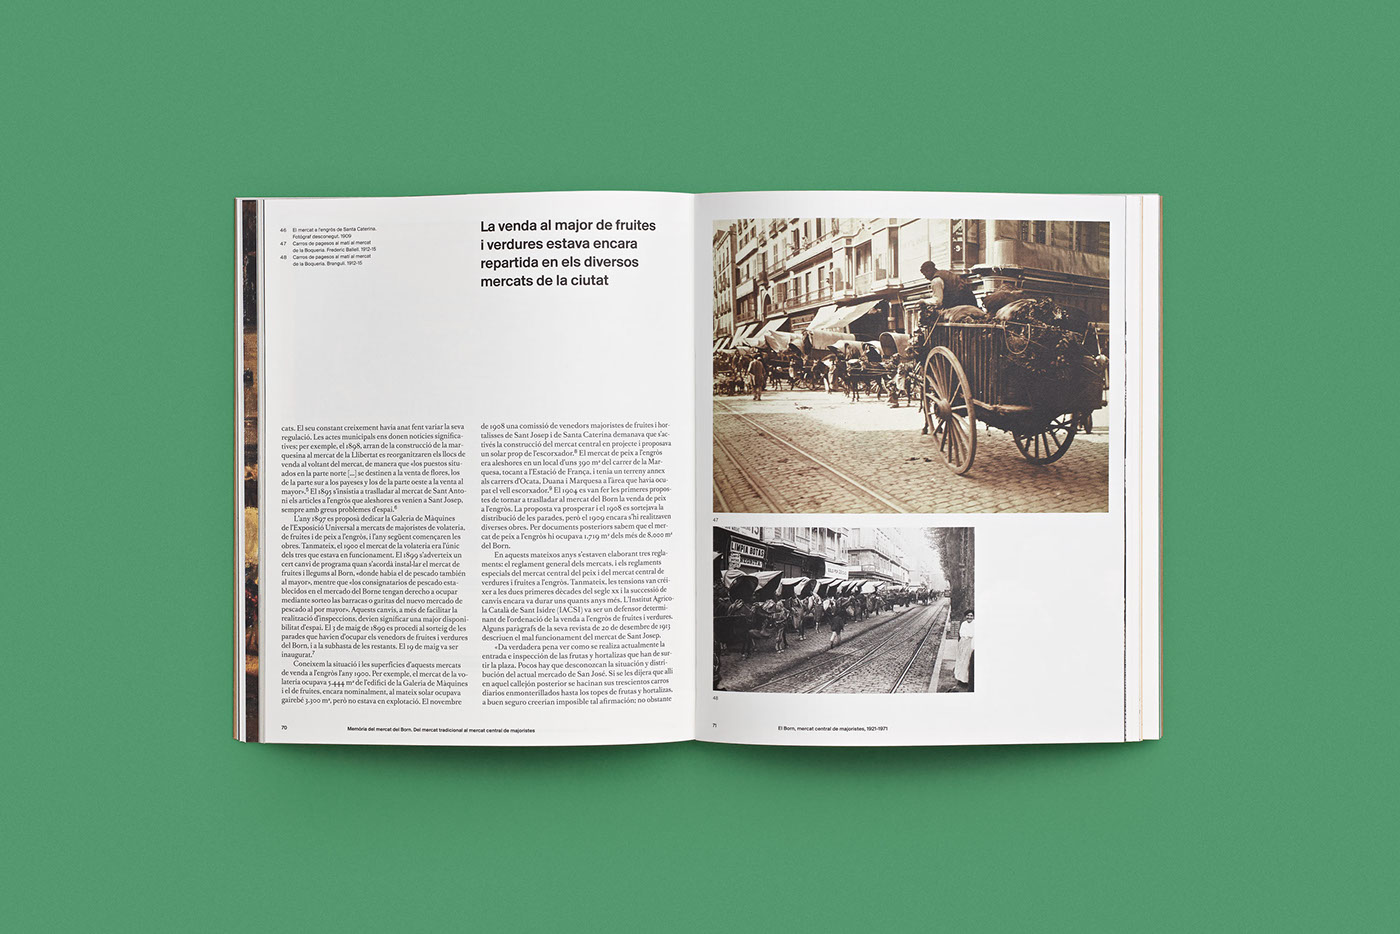 Born book editorial barcelona history architecture forma